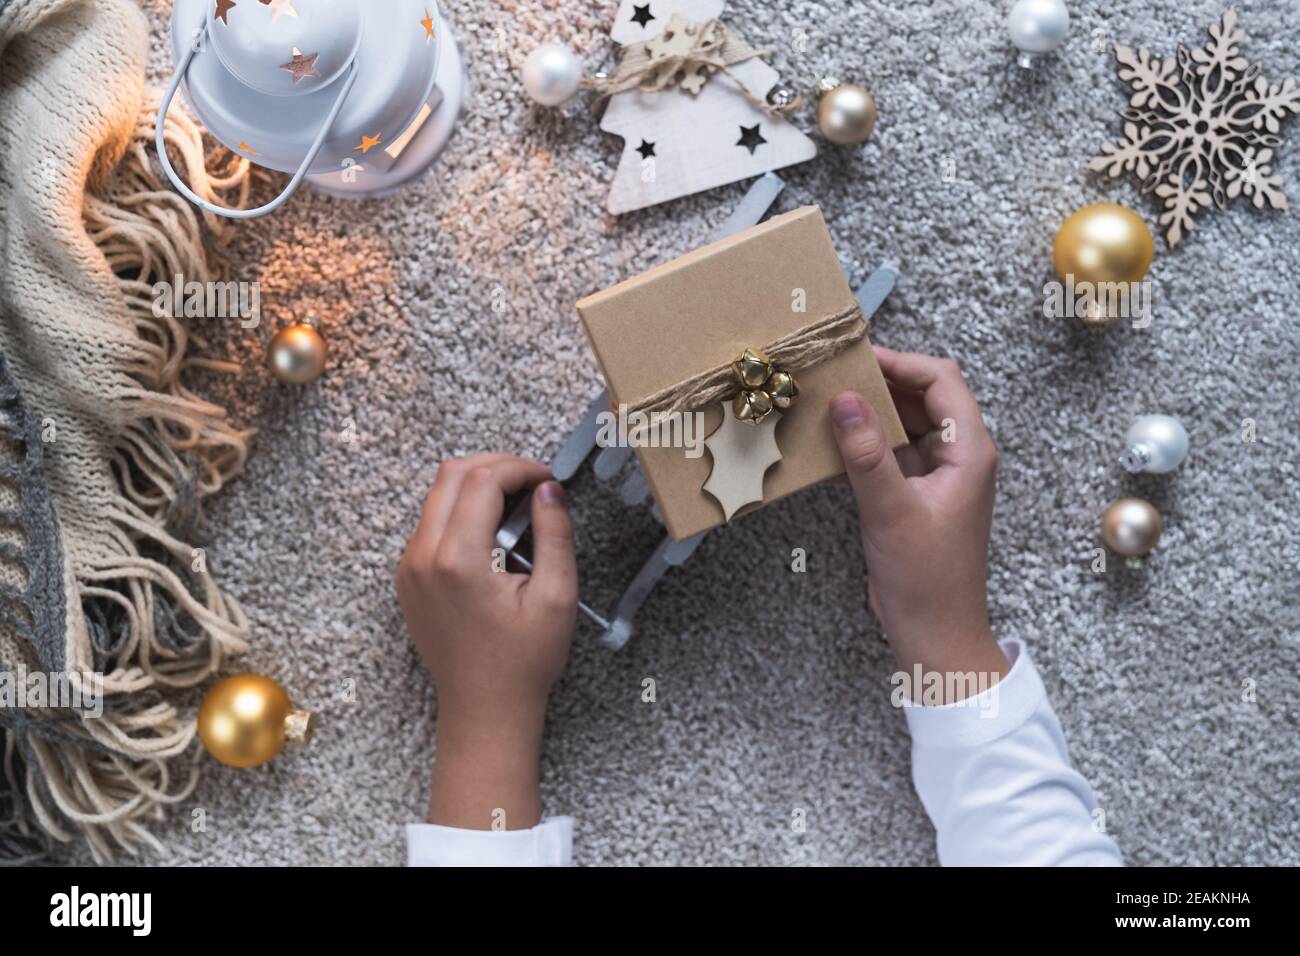 Weihnachtshintergrund mit gemütlicher Winteratmosphäre. Kinderhände mit dem Geschenk für das neue Jahr. Stockfoto